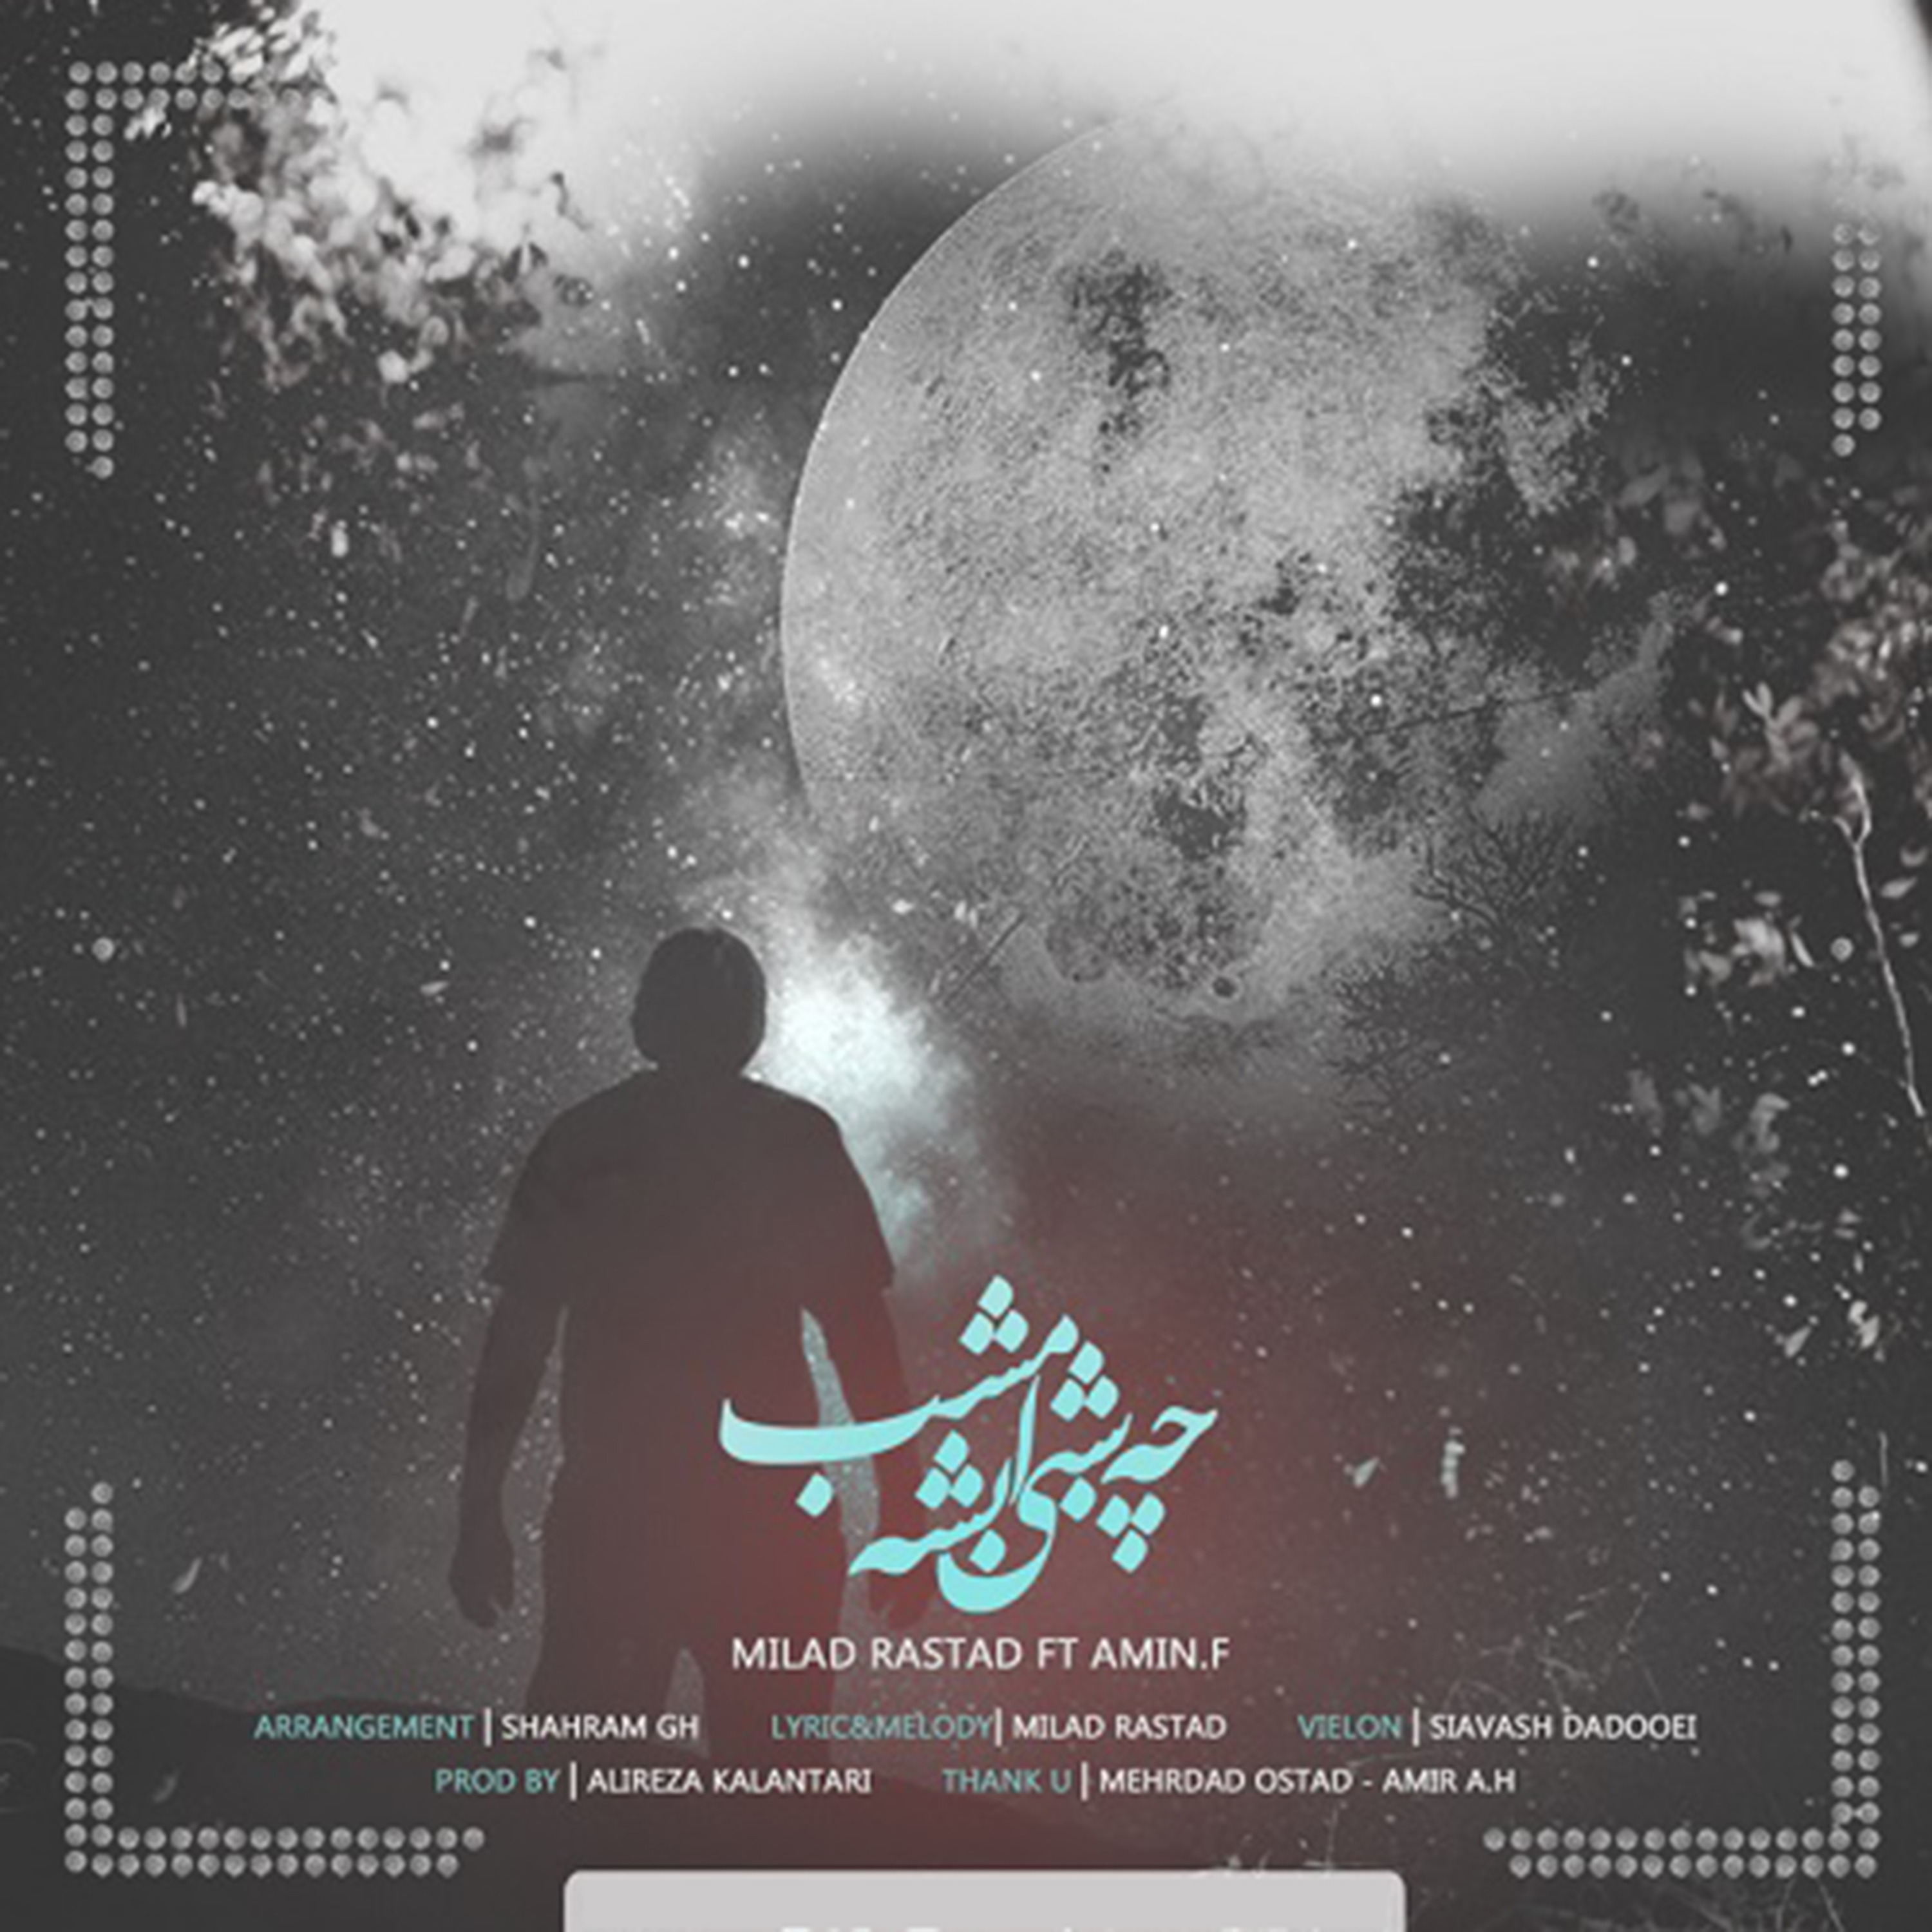  دانلود آهنگ جدید میلاد راستاد - چه شبی بشه امشب | Download New Music By Milad Rastad - Che Shabi Beshe Emshab (feat. Amin.F)